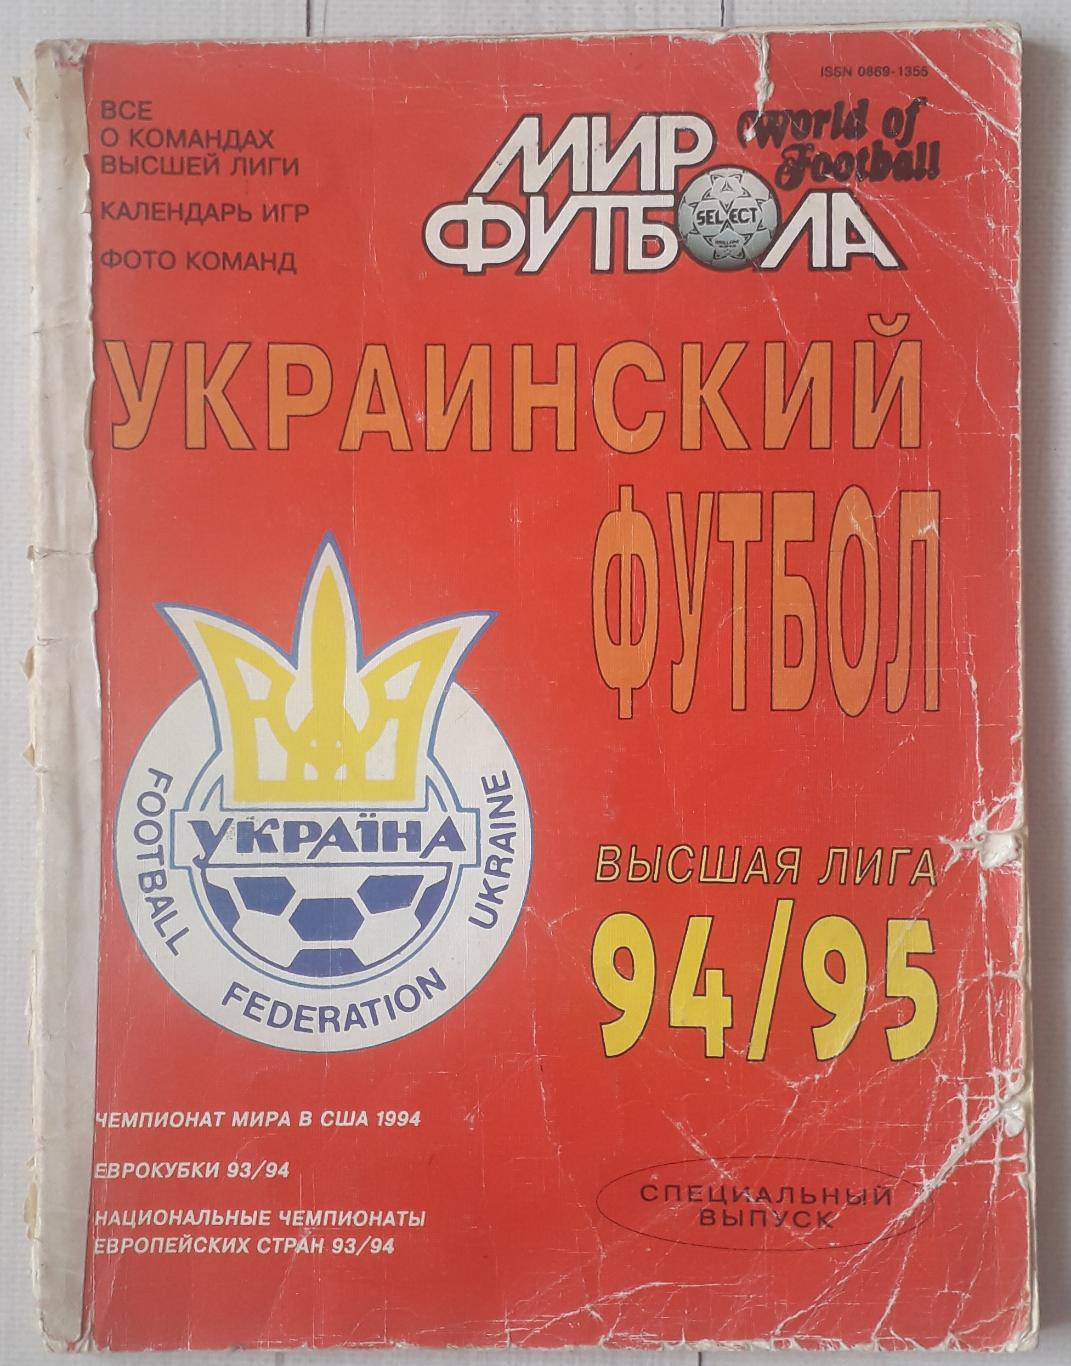 Мир футбола. Украинский футбол 94/95. Высшая лига. Спецвыпуск